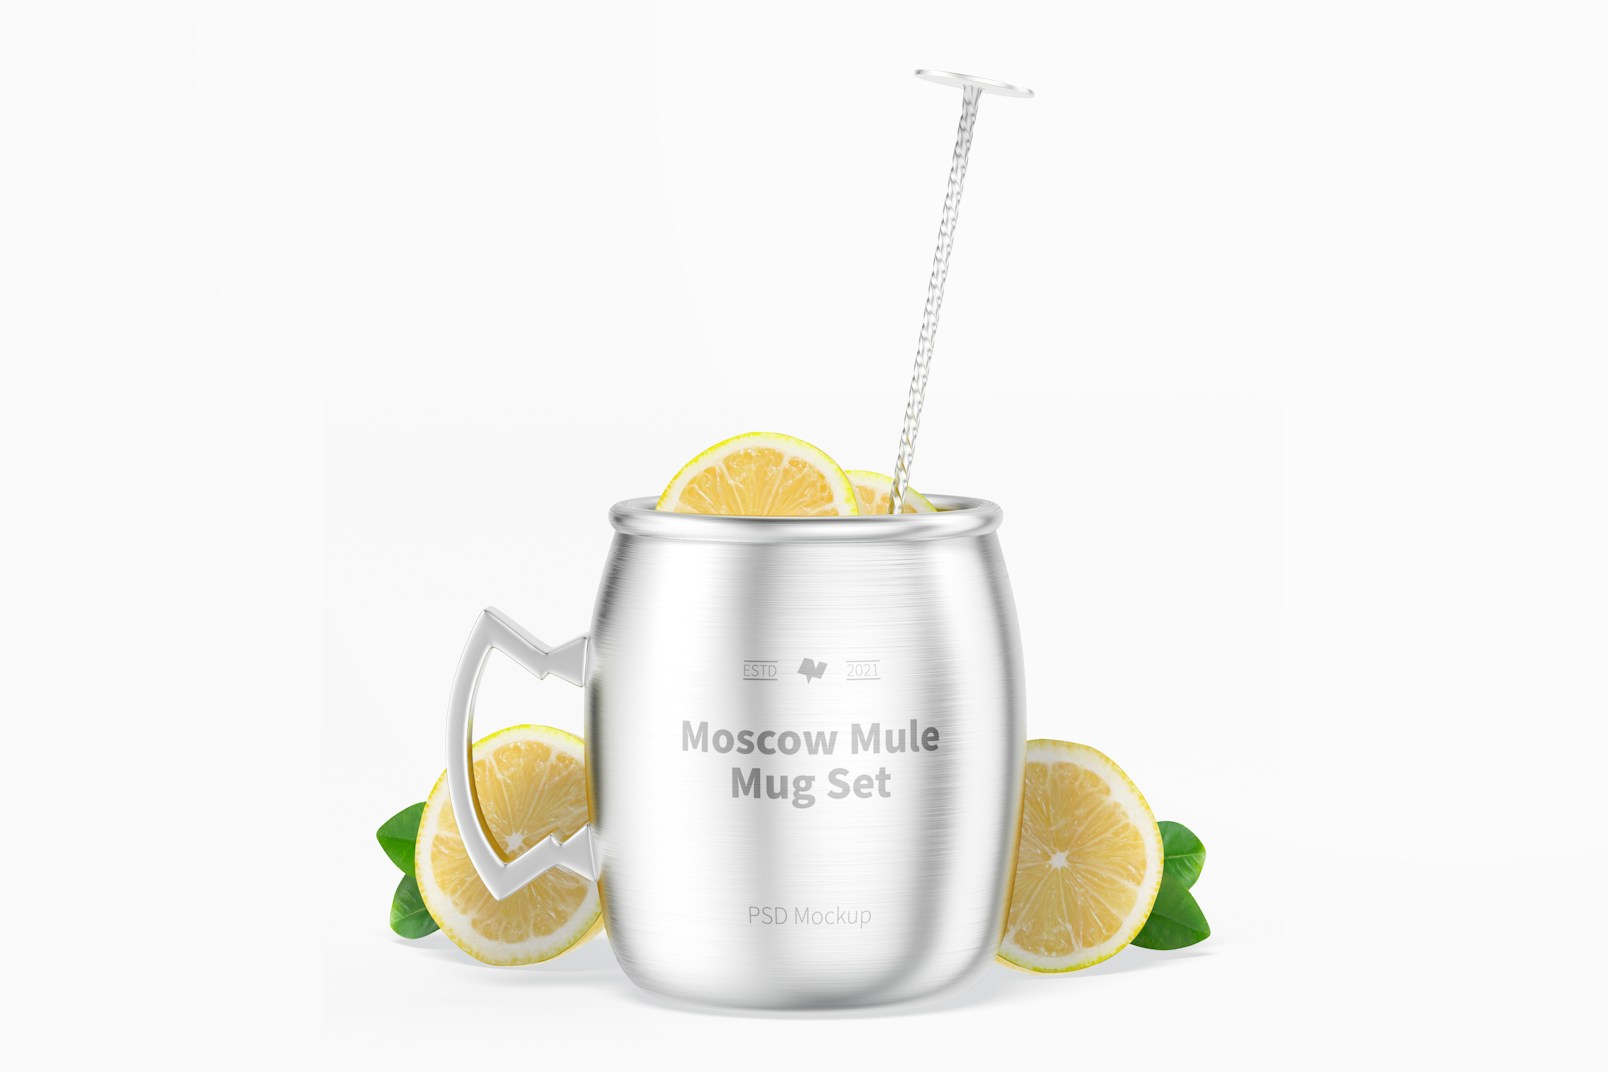 Moscow Mule Mug Set with Lemons Mockup